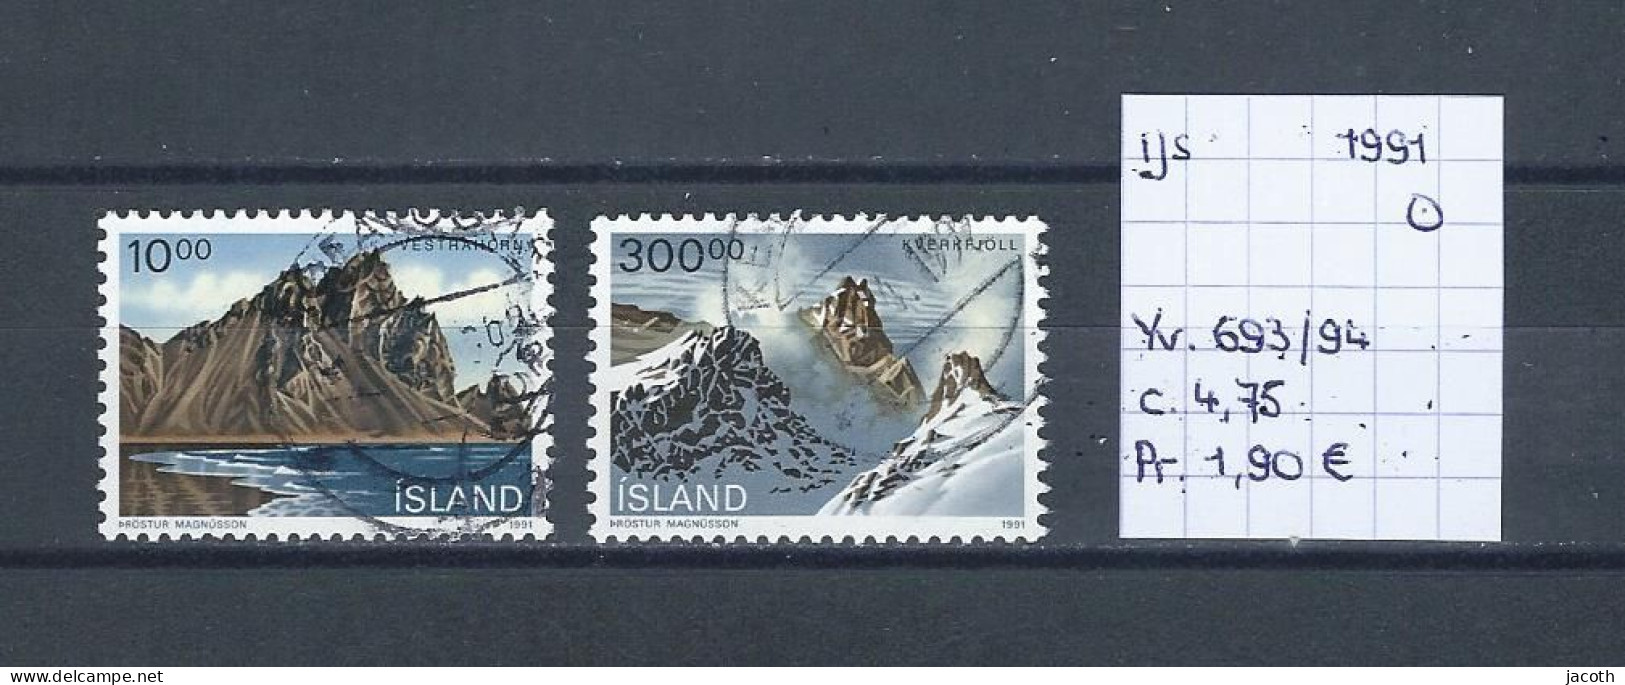 (TJ) IJsland 1991 - YT 693/94 (gest./obl./used) - Usati